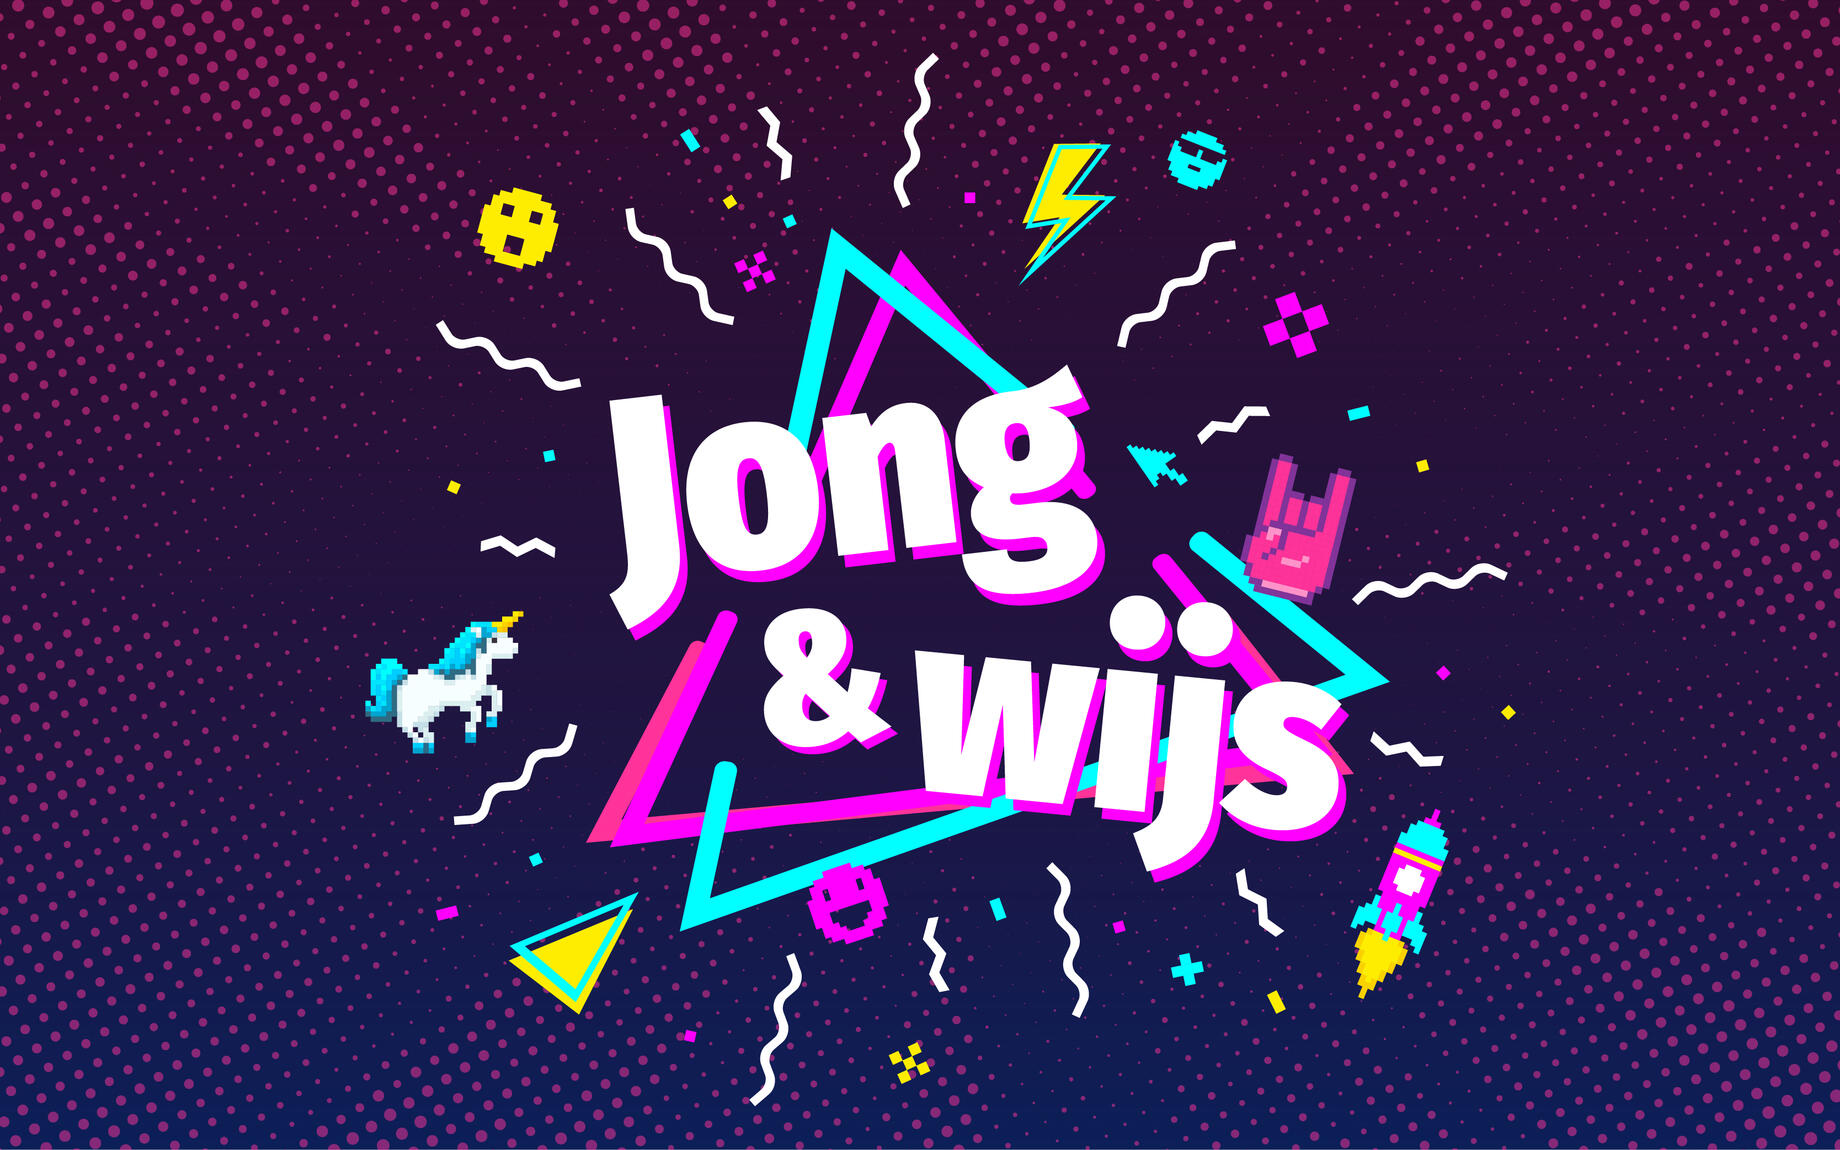 Jong&Wijs logo